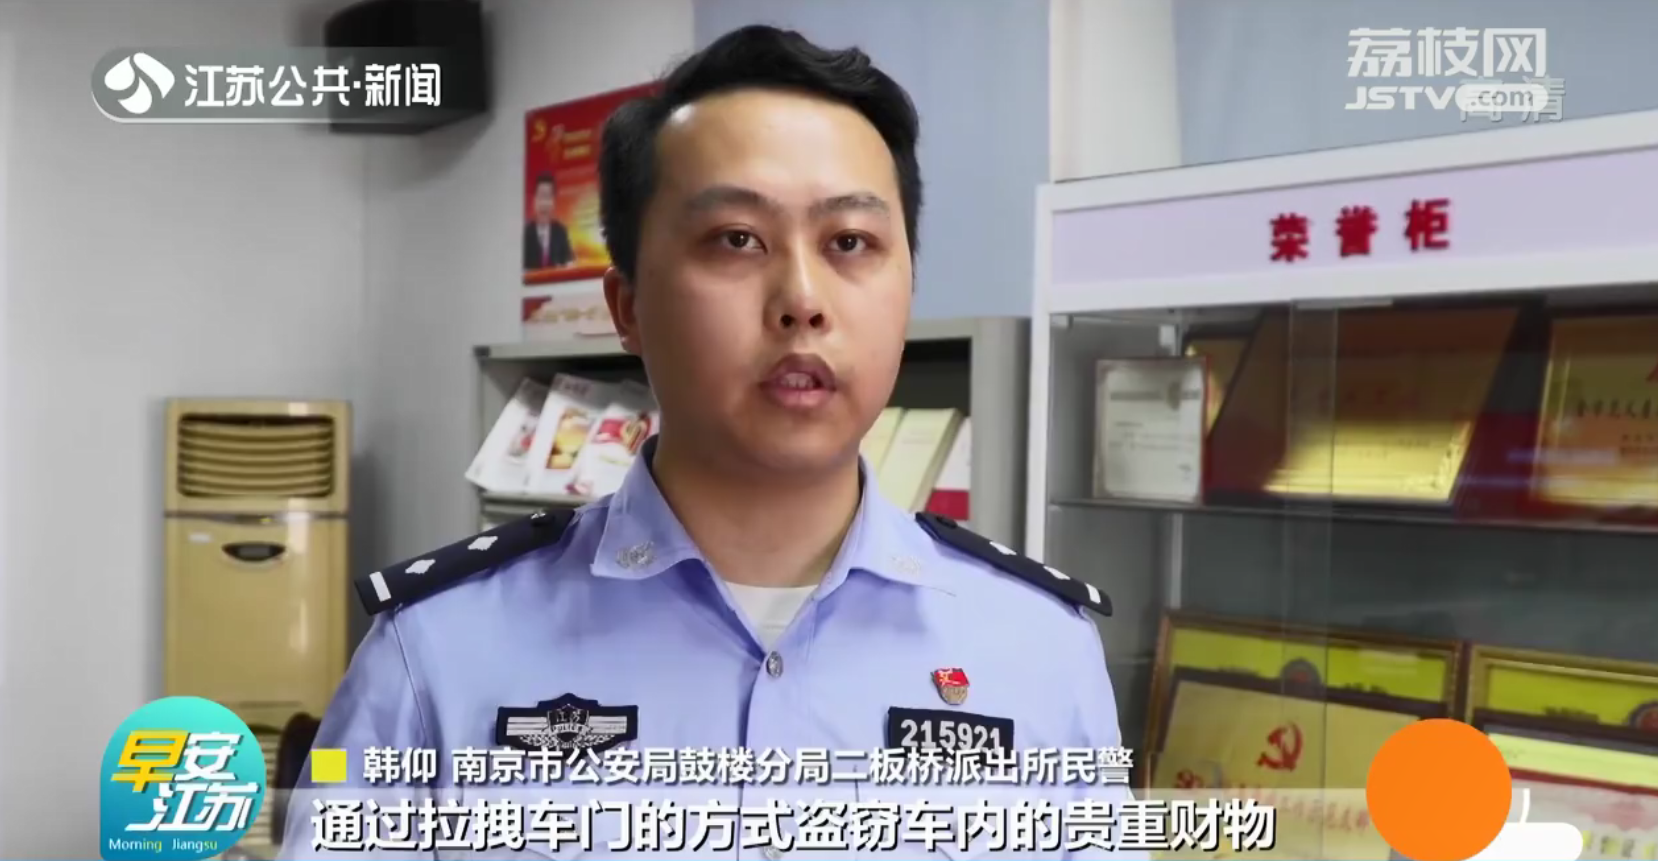 跨六省十城“拉车门”盗窃 三人在南京落网